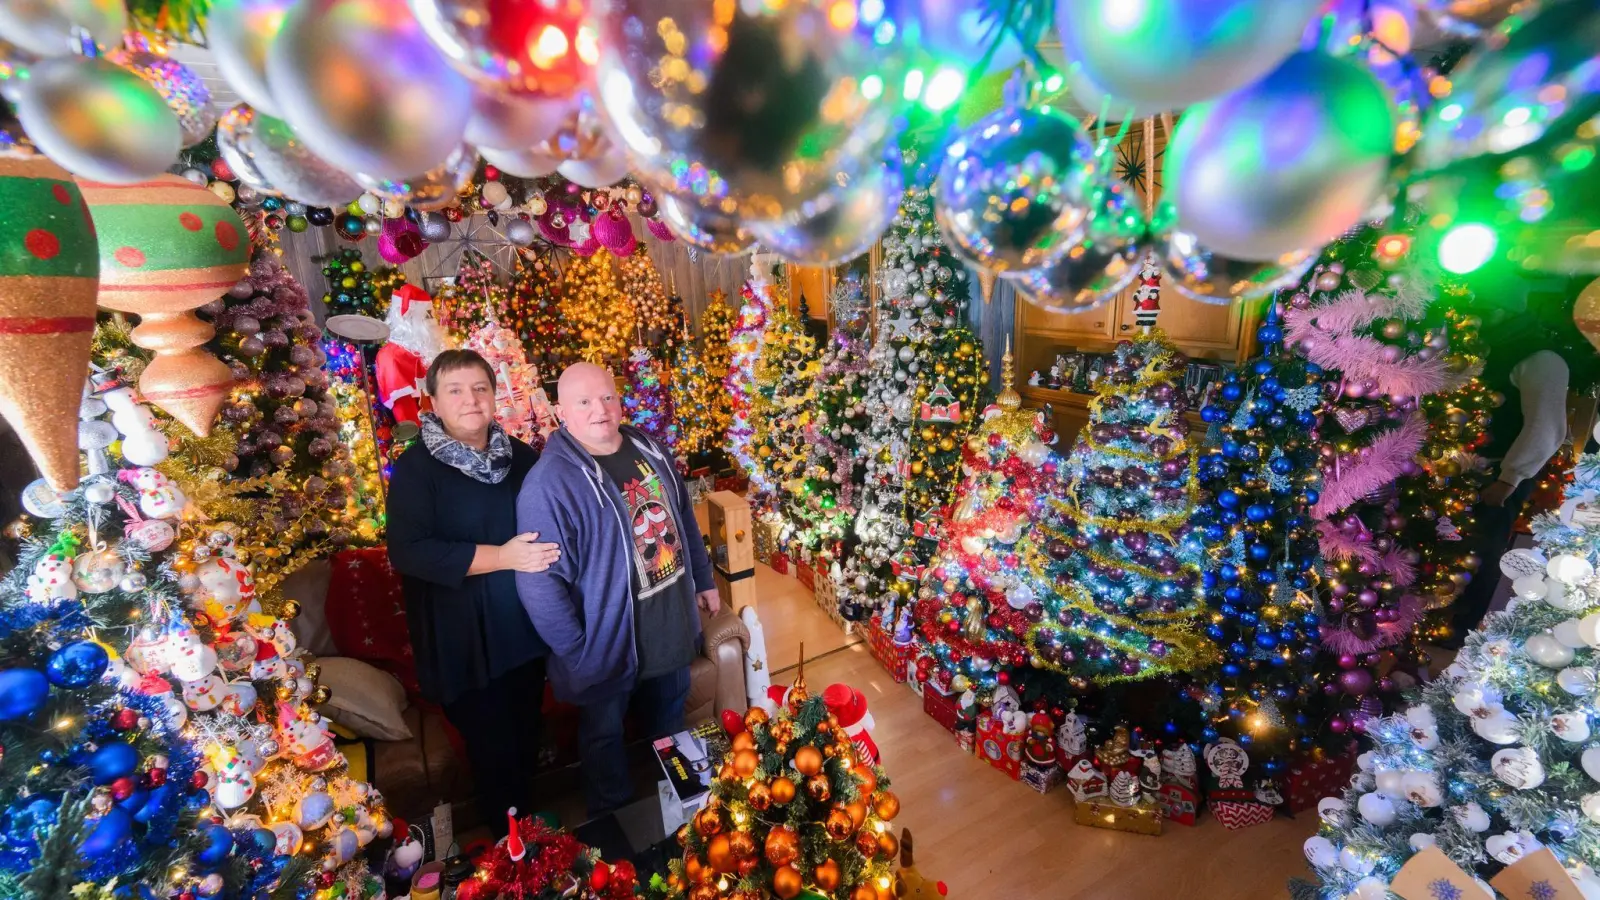 Mehr Weihnachten geht kaum: Susanne und Thomas Jeromin stehen inmitten von Weihnachtsbäumen im Wohnzimmer ihres Hauses. (Foto: Julian Stratenschulte/dpa)